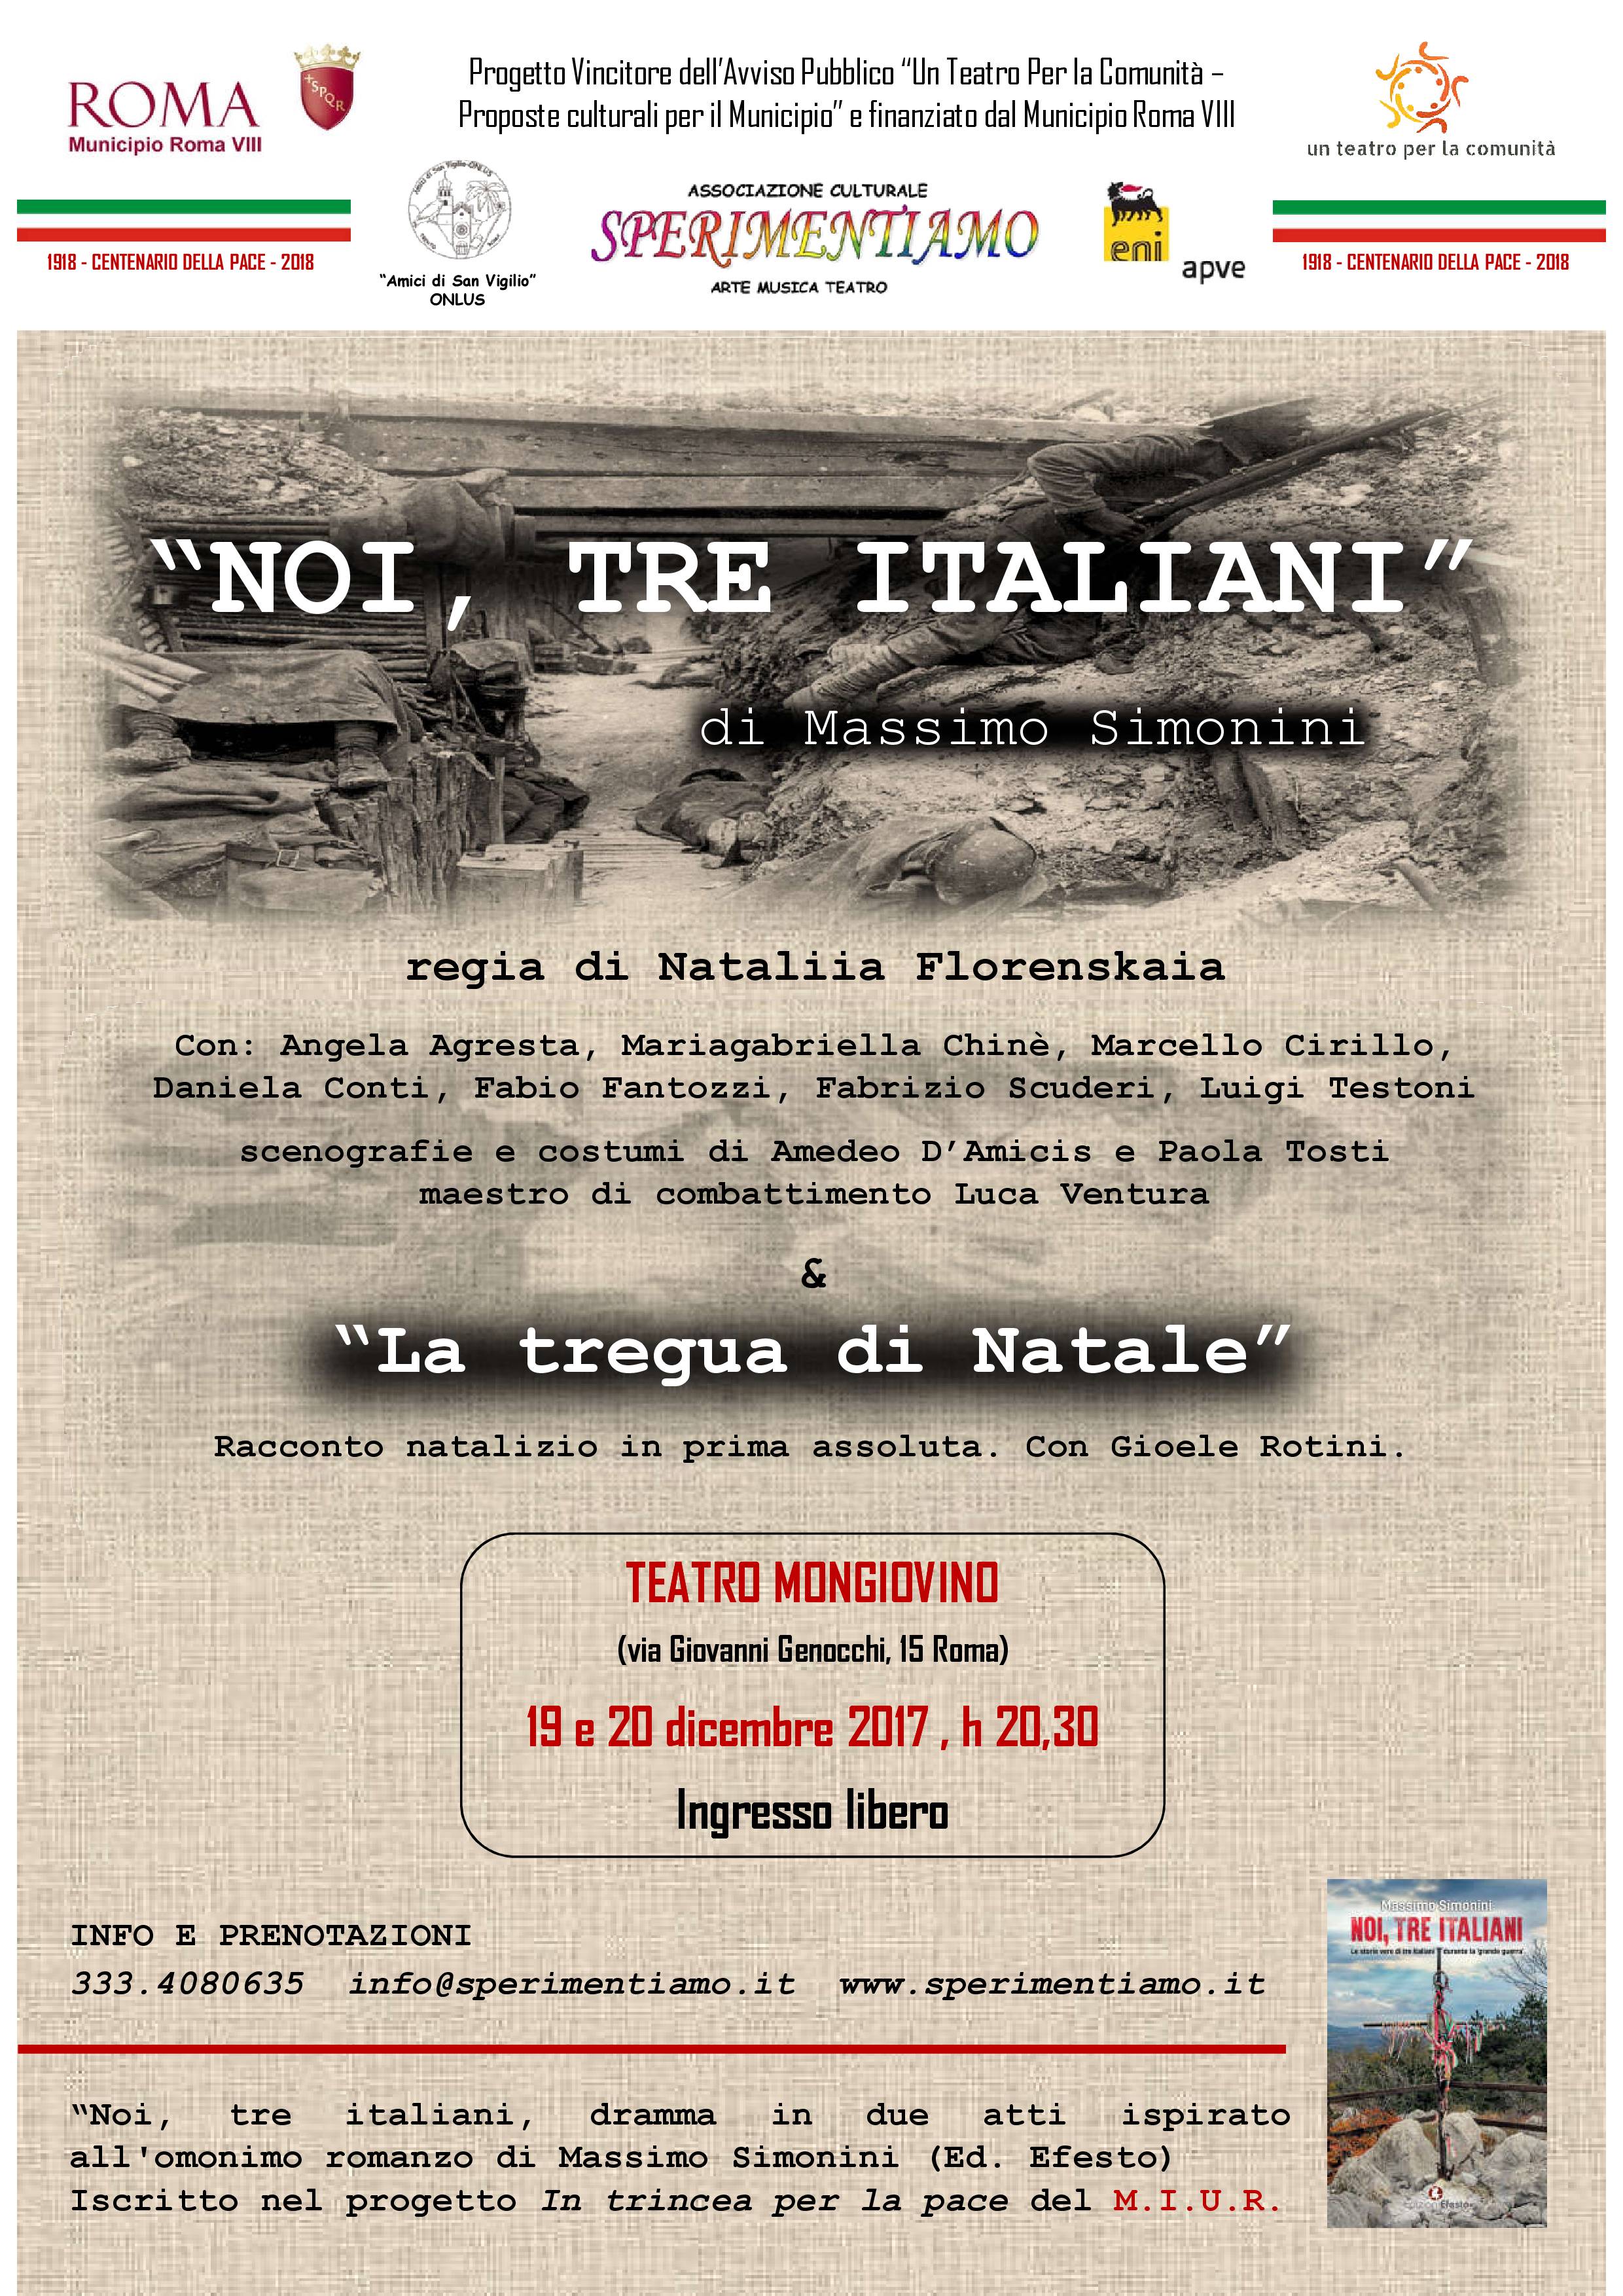 Lo spettacolo teatrale “Noi, tre Italiani” al Teatro Mongiovino di Roma il 19 e 20 dicembre. Ingresso gratuito